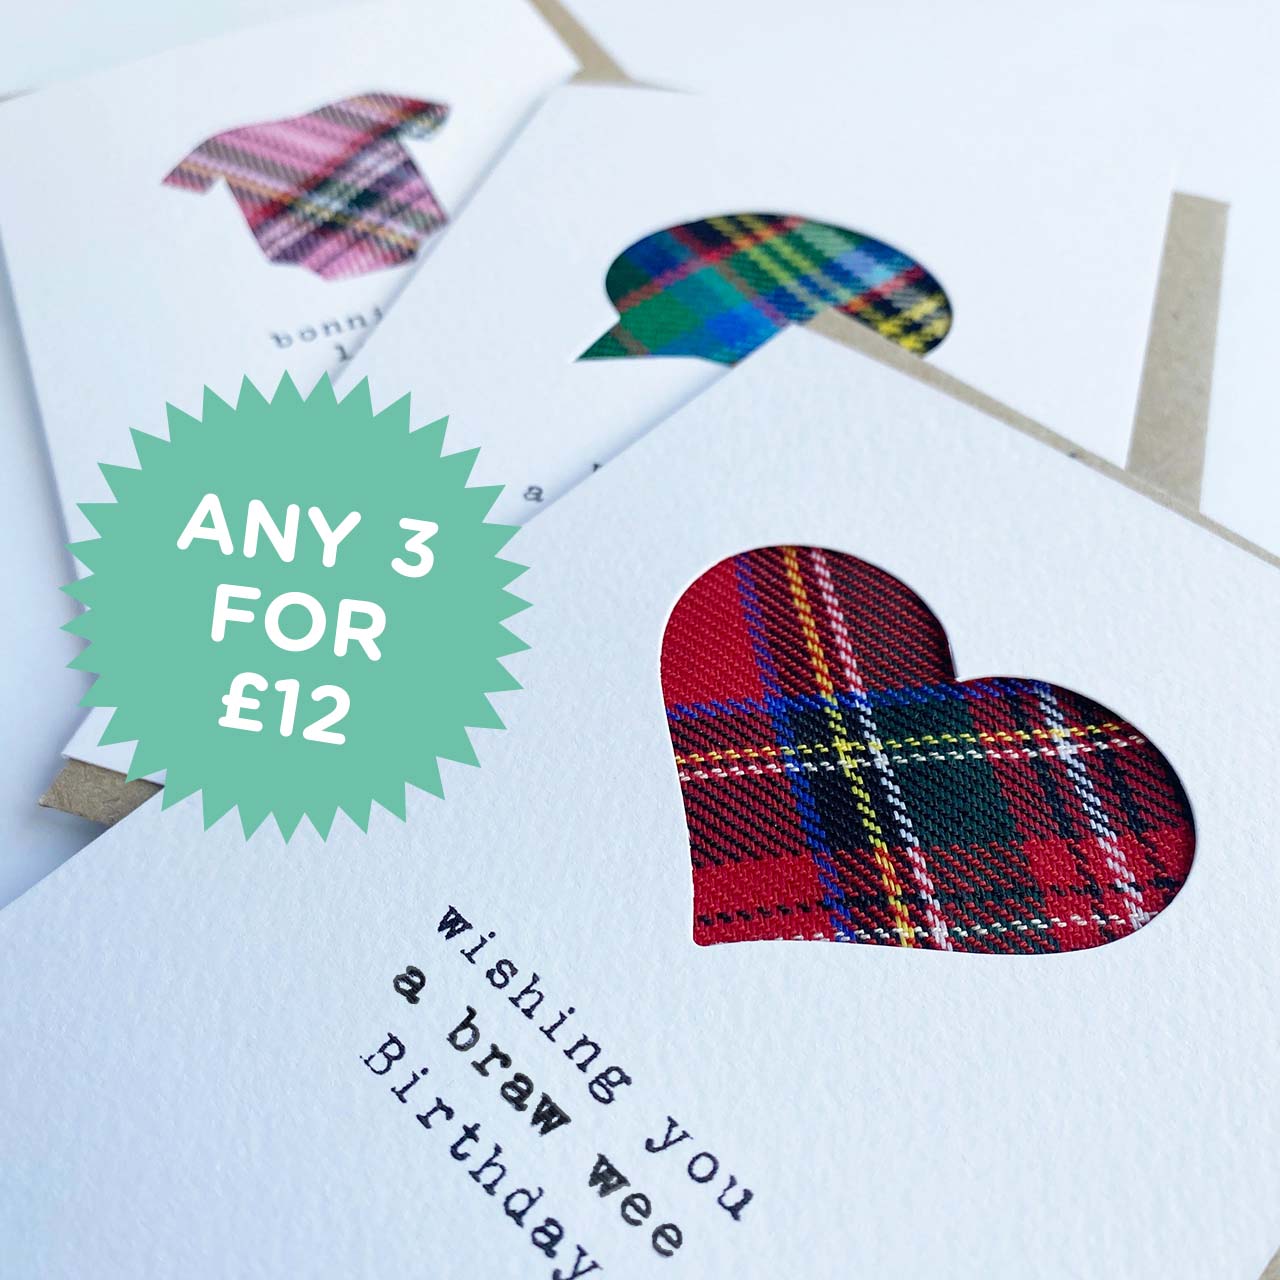 'Bonnie Wee Lassie' Scottish Baby Card with Tartan